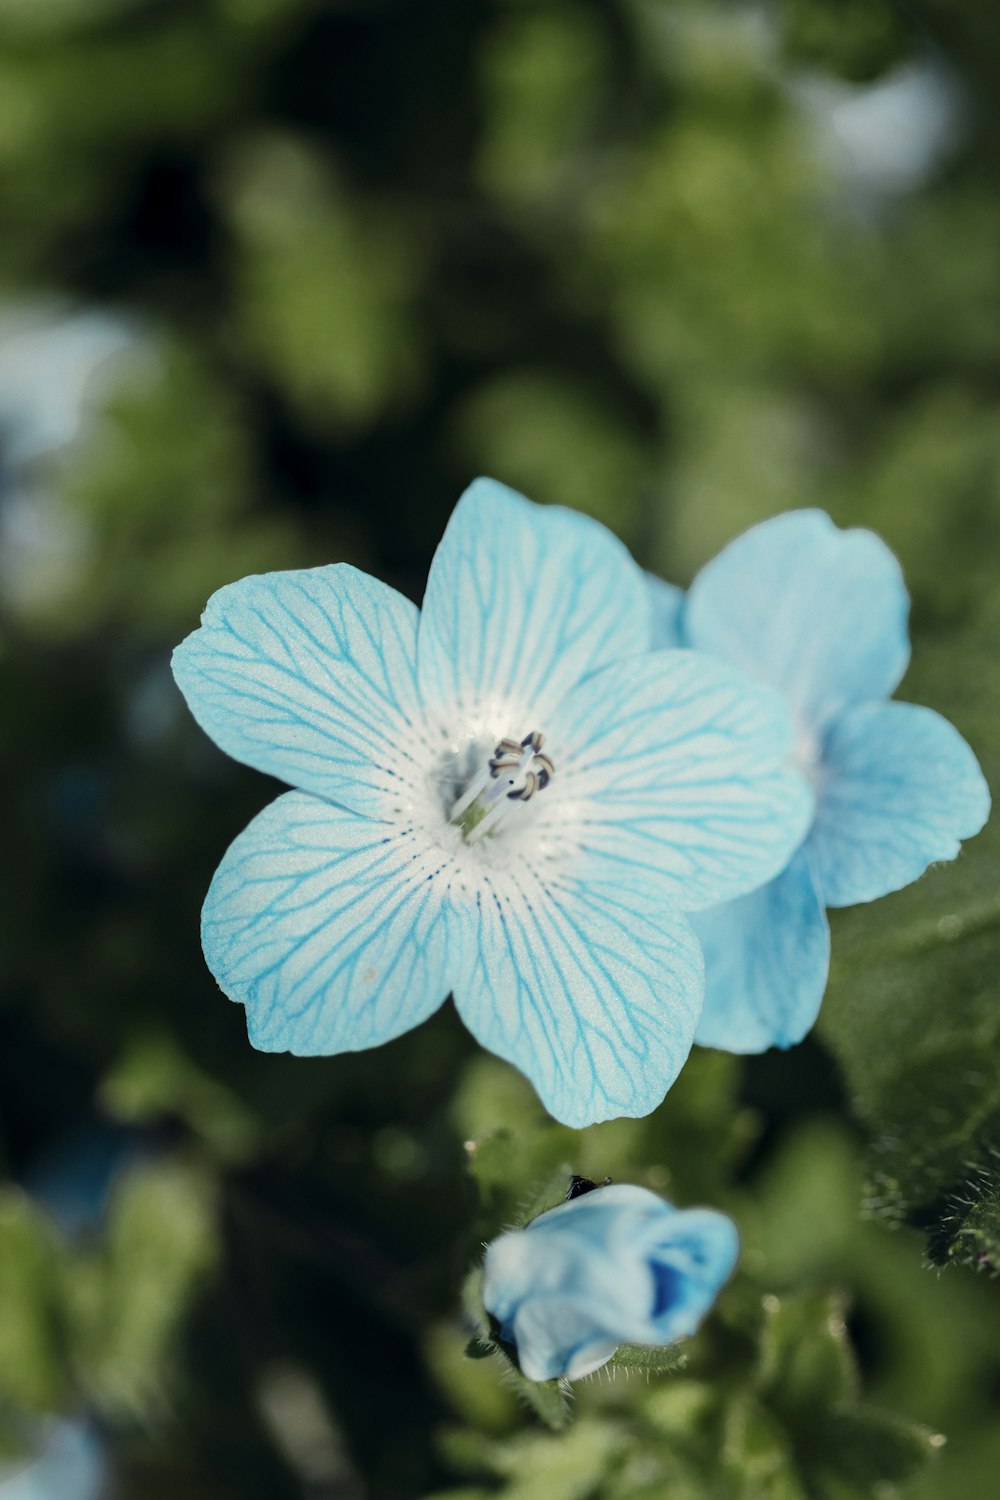 Fleur bleue dans une lentille à bascule décentrement